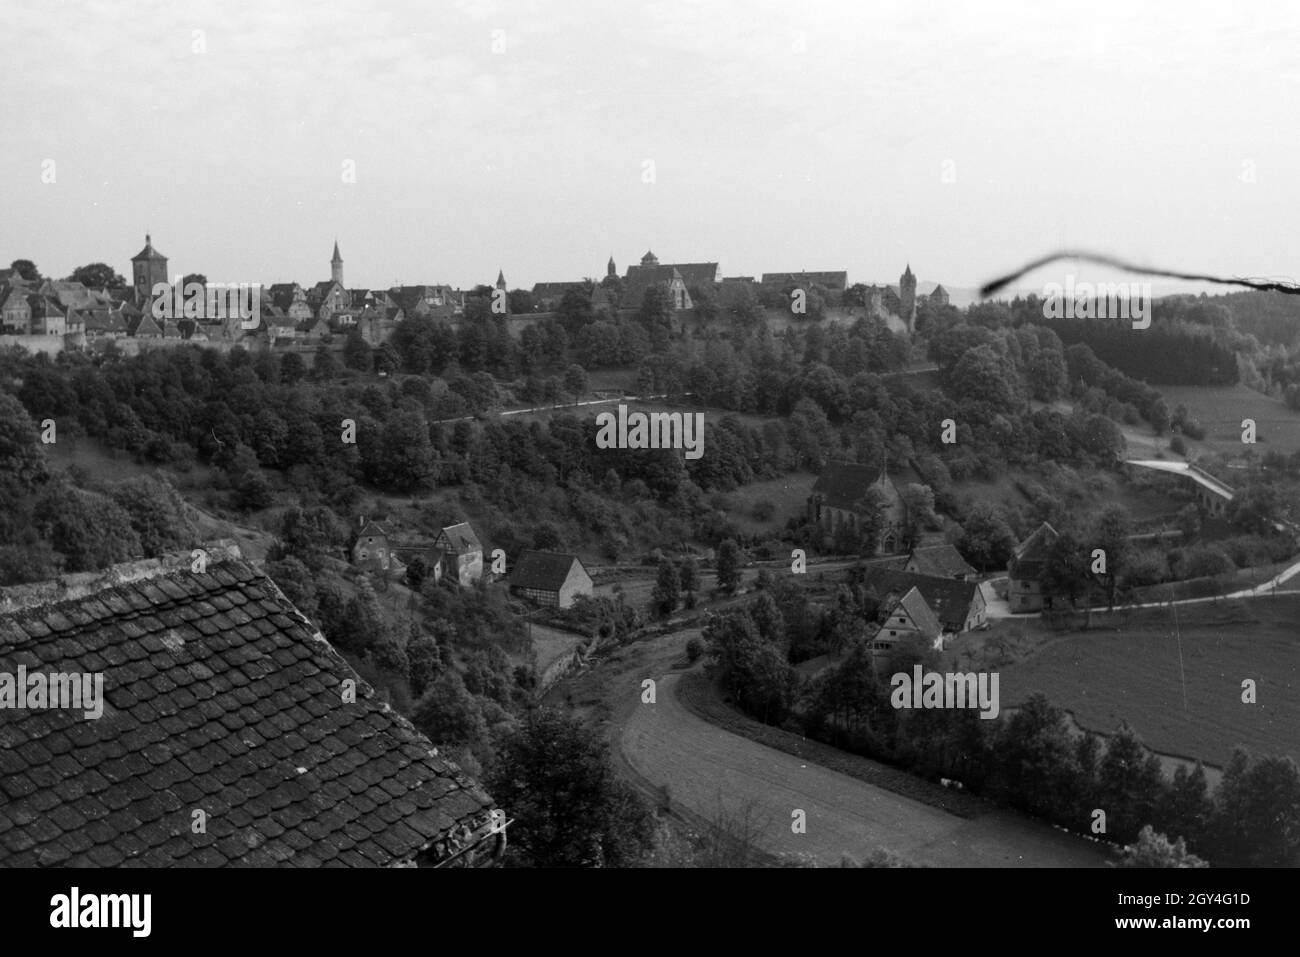 Aussicht von der Burg auf das Tal und die Stadt Rothenburg ob der Tauber, Deutschland 1930er Jahre. Panoramic view from the castle on the valley and city of Rothenburg ob der Tauber, Germany 1930s. Stock Photo